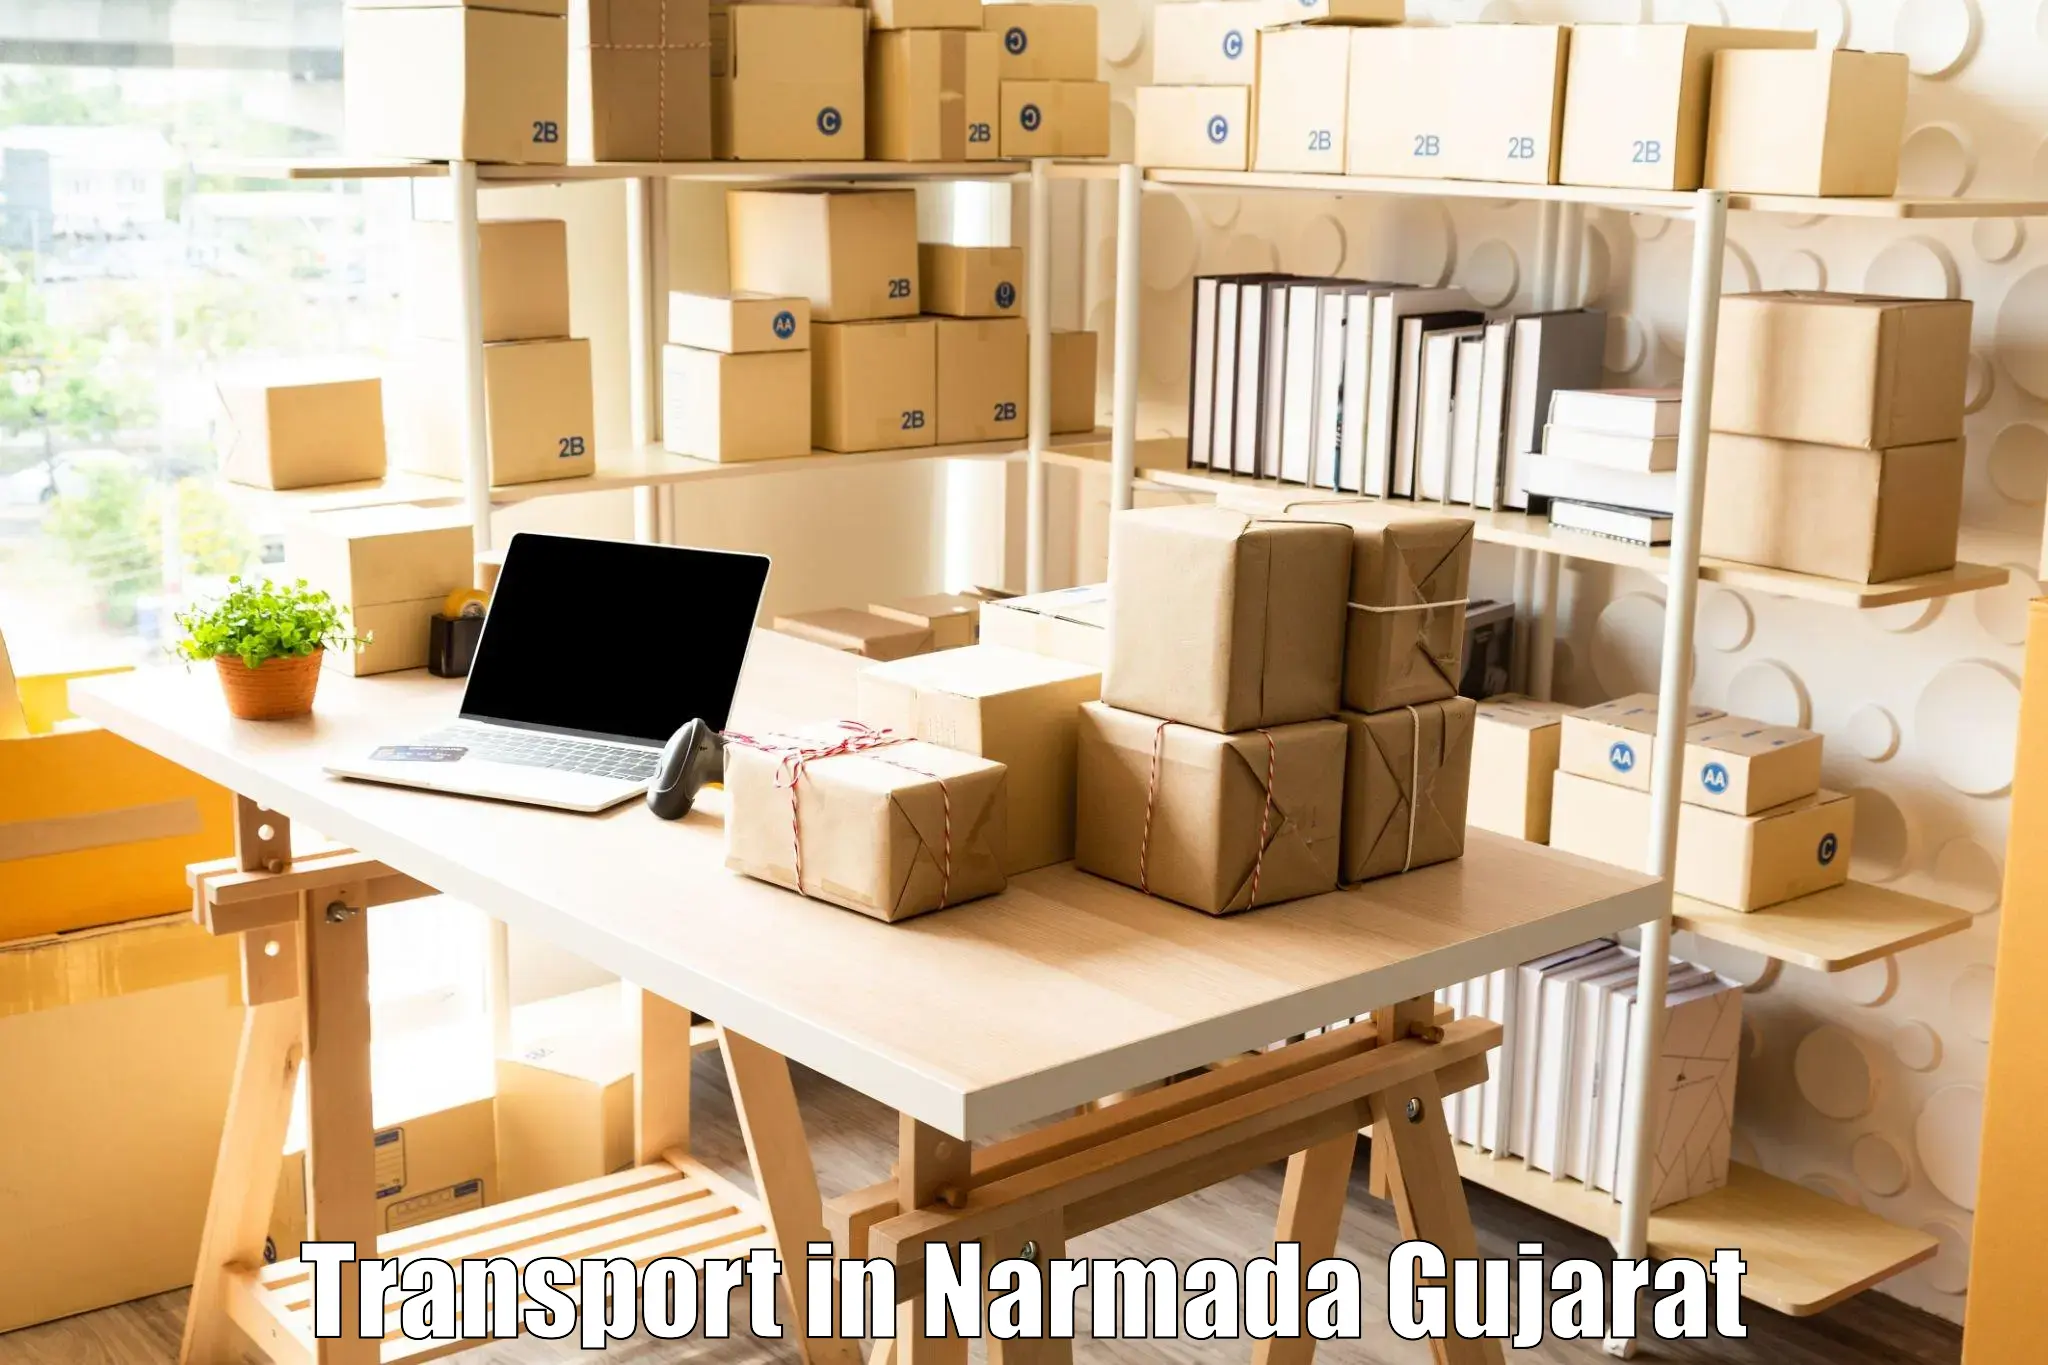 Furniture transport service in Narmada Gujarat